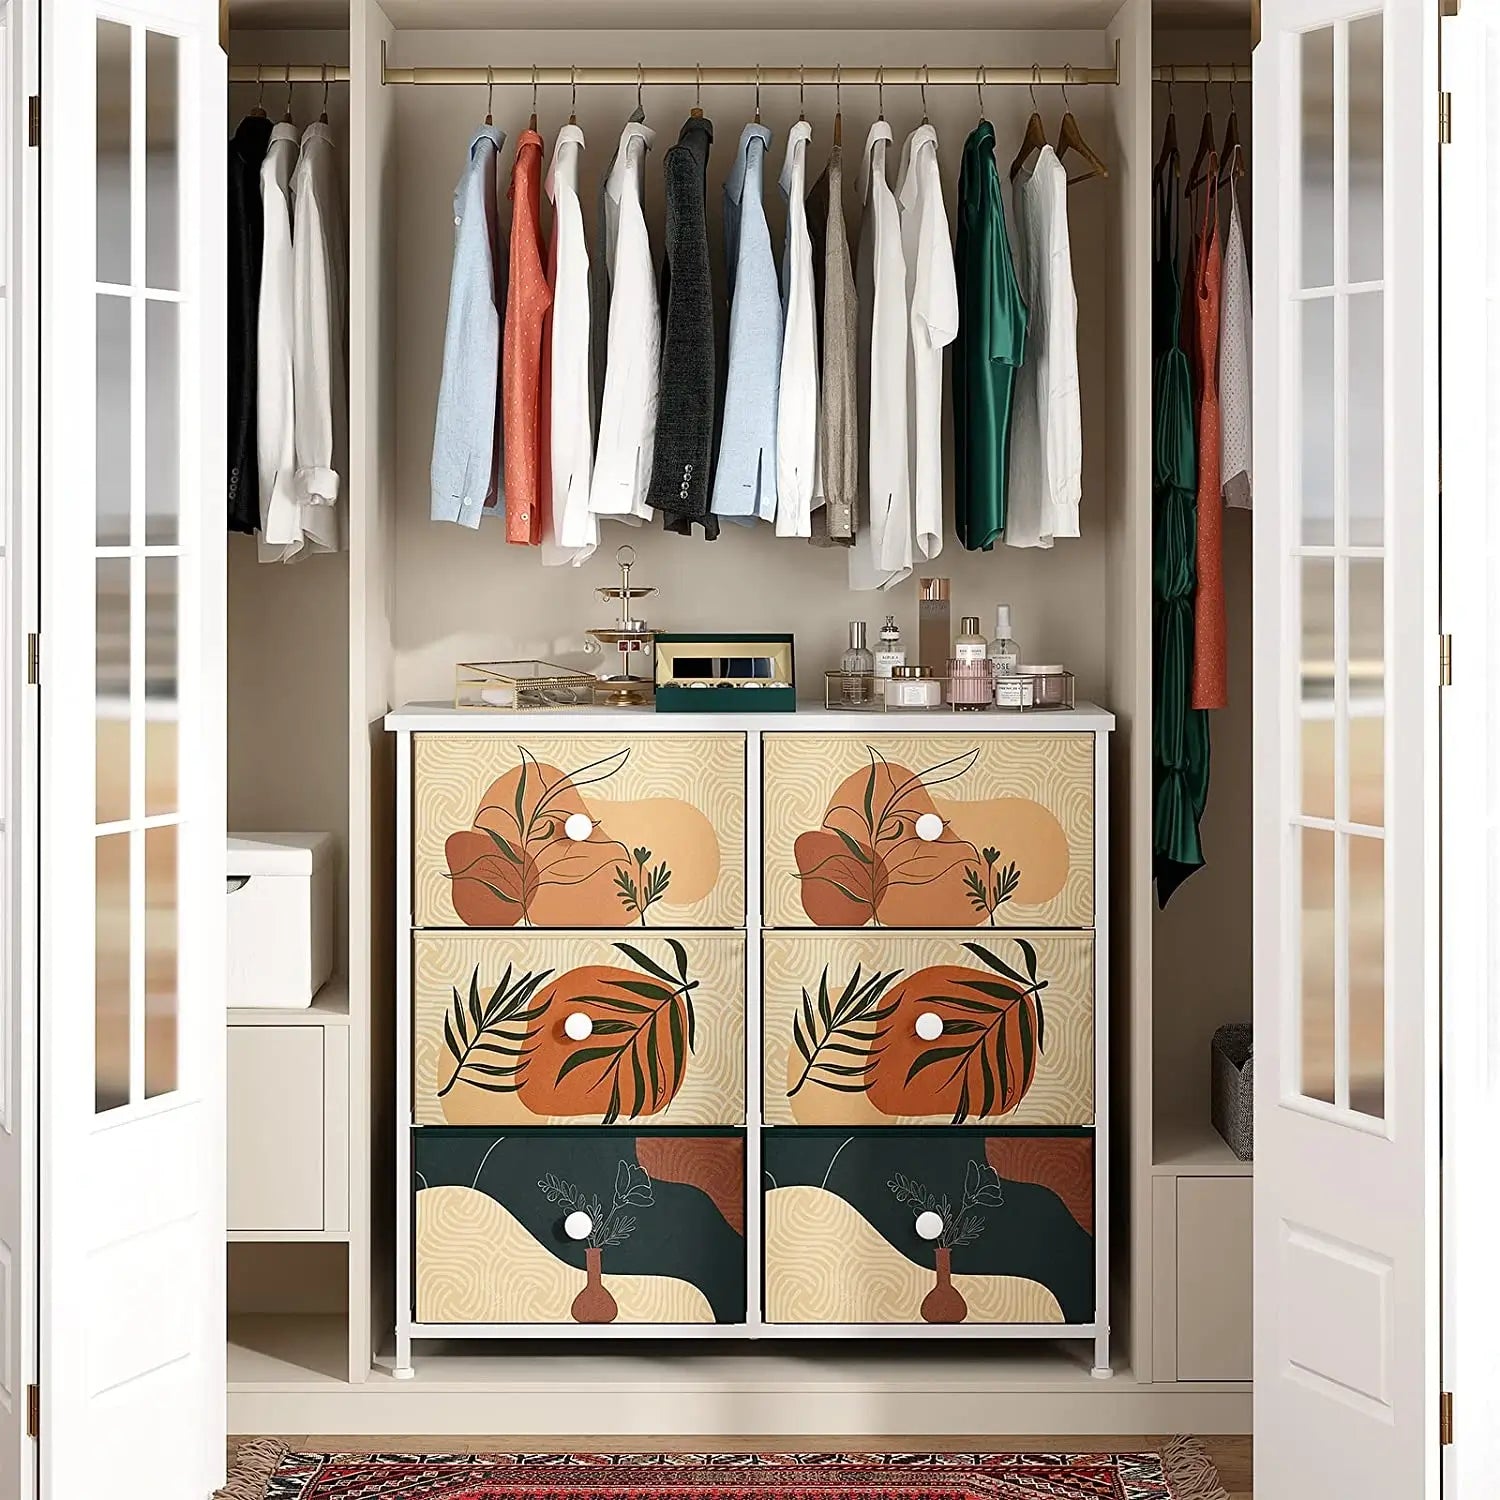 Enhomee Bedroom Dresser with 6 Boho Storage Drawers